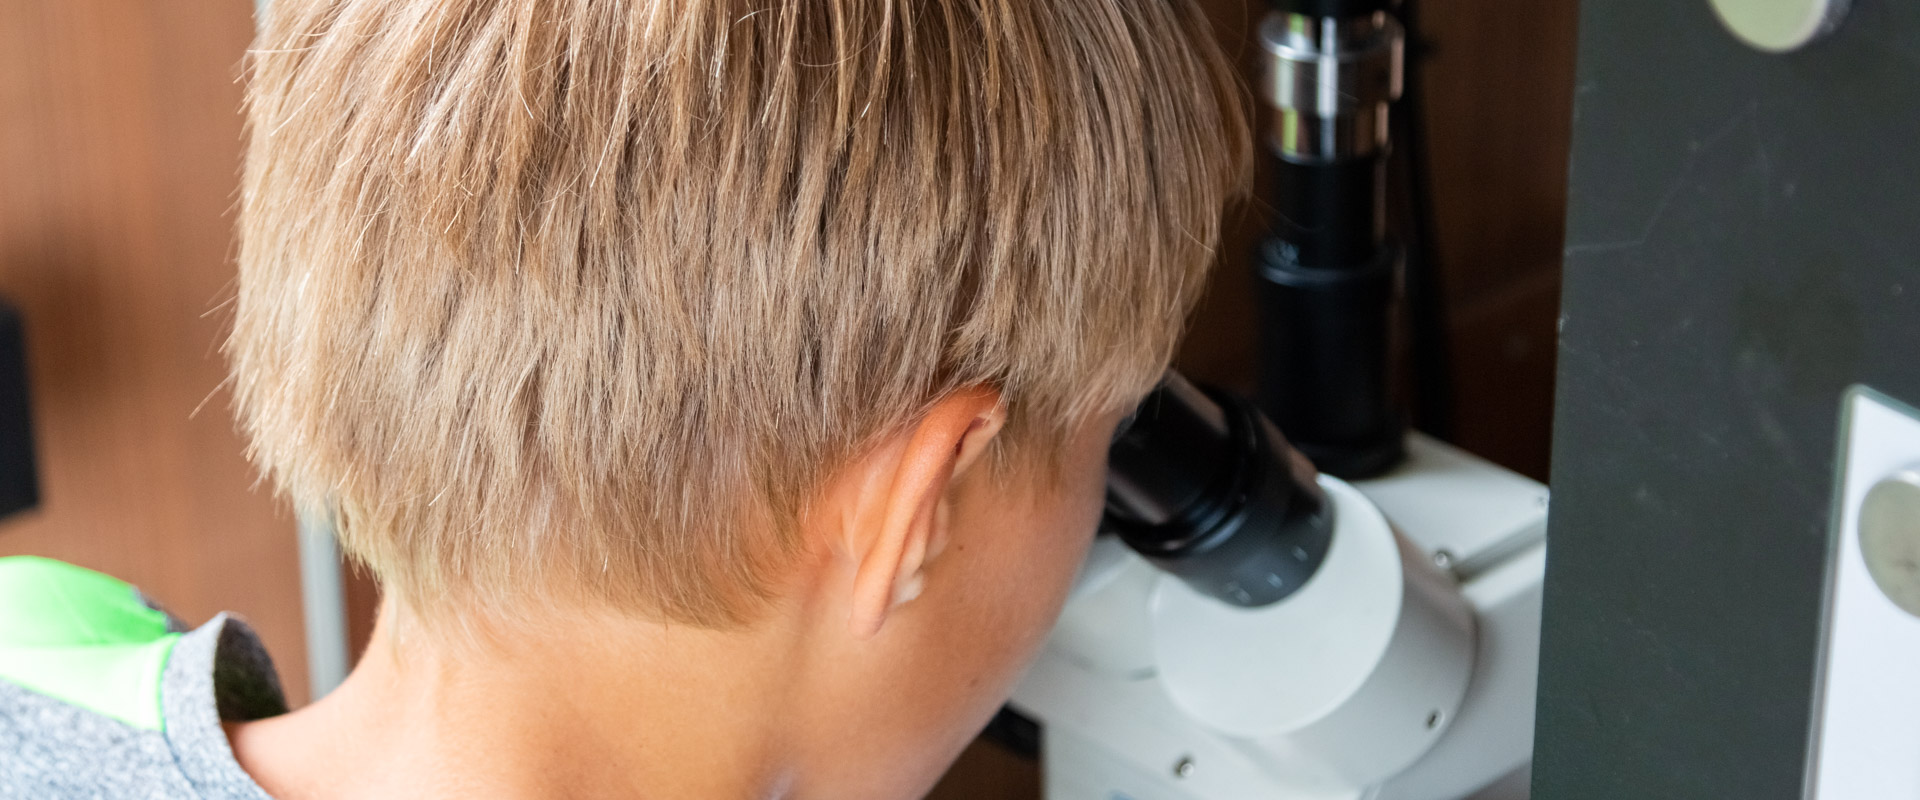 Ein Kind benutzt ein Mikroskop